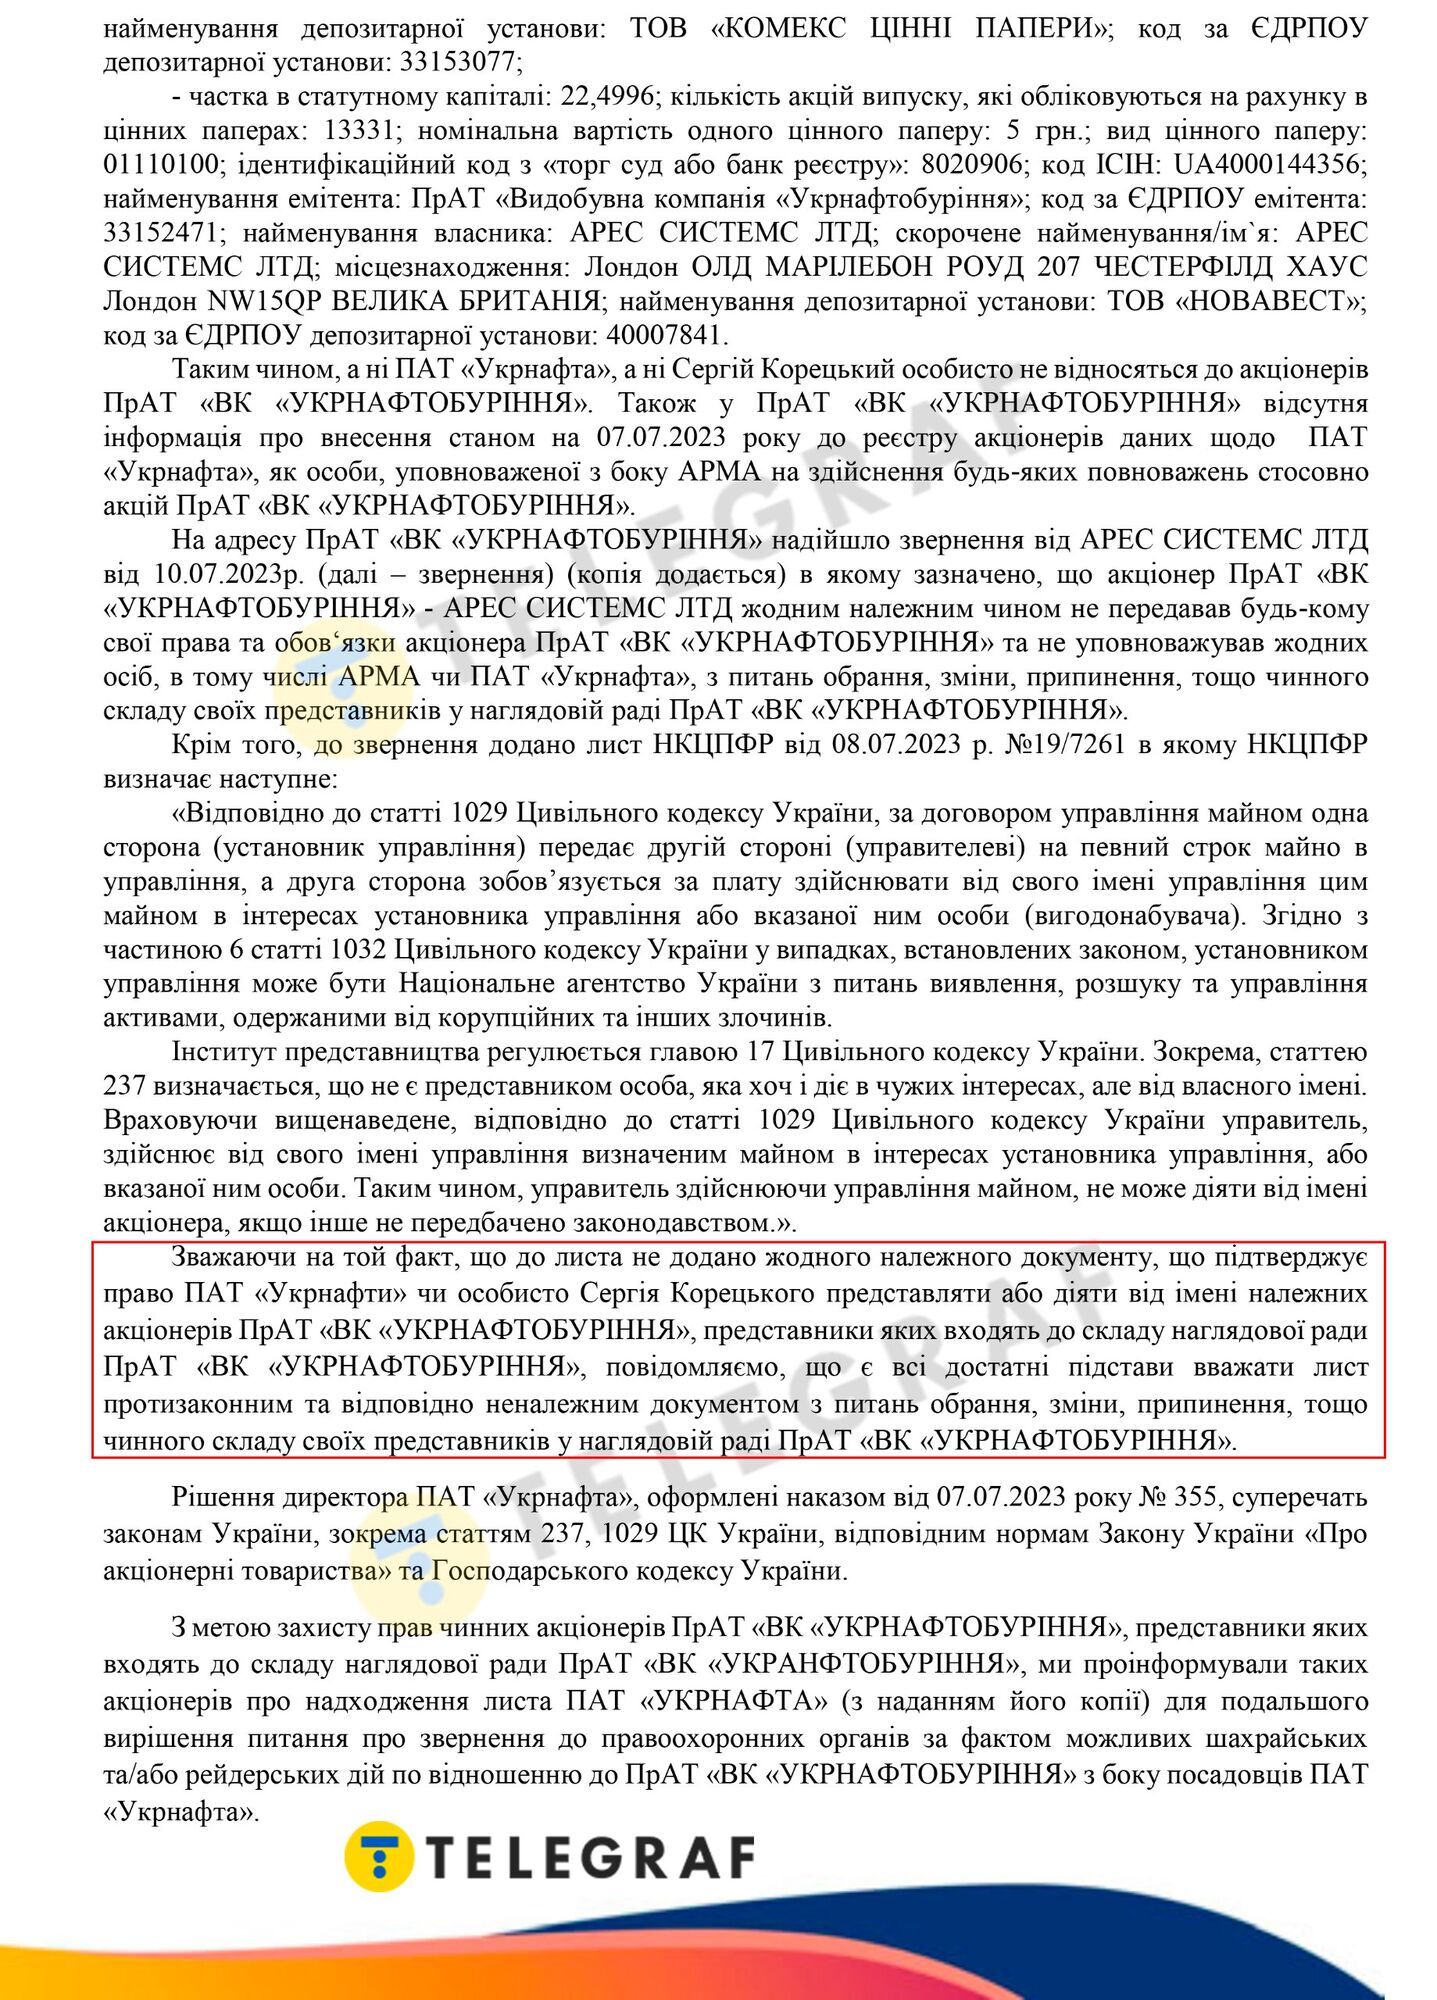 "Укрнефтебурение" обвинило главу "Укрнафты" Корецкого в грубом нарушении закона